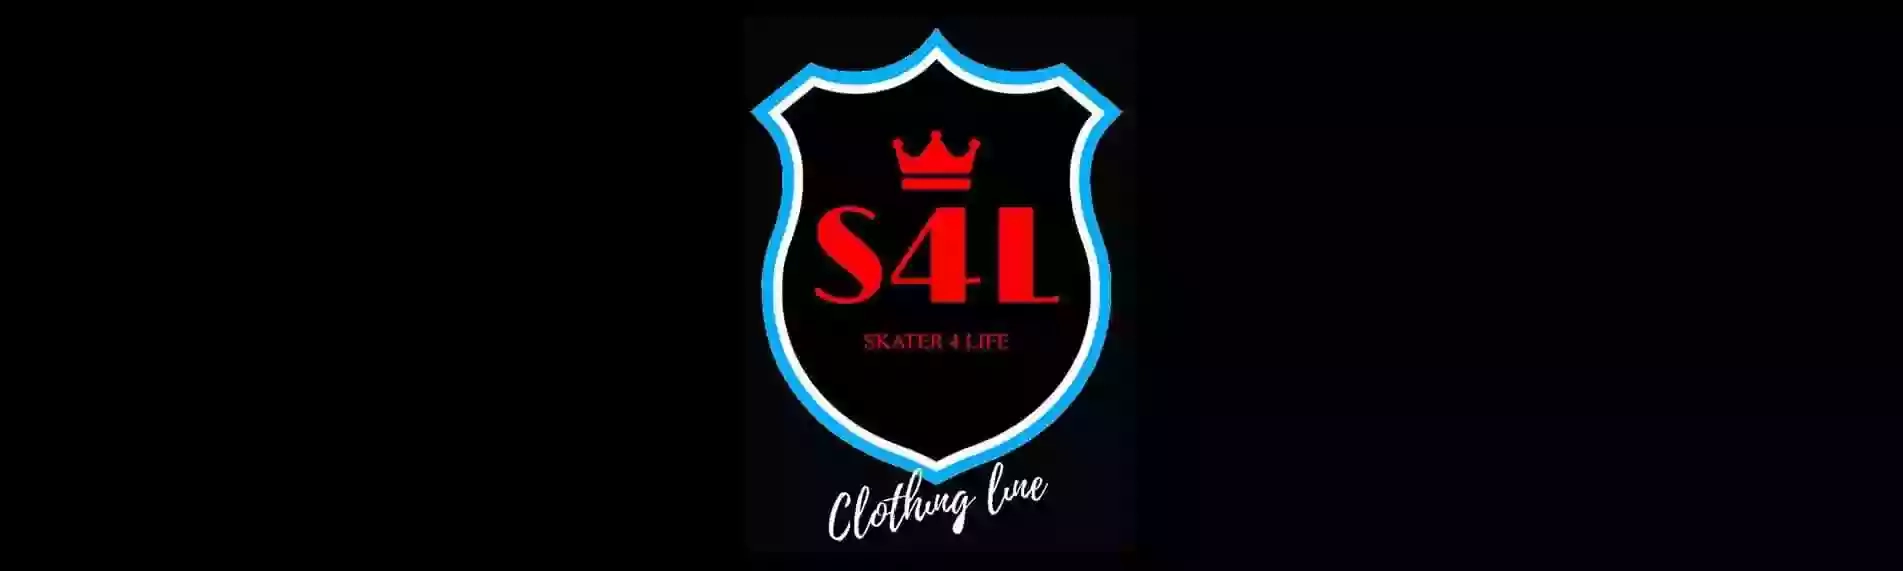 S4L Skater 4 Life UK